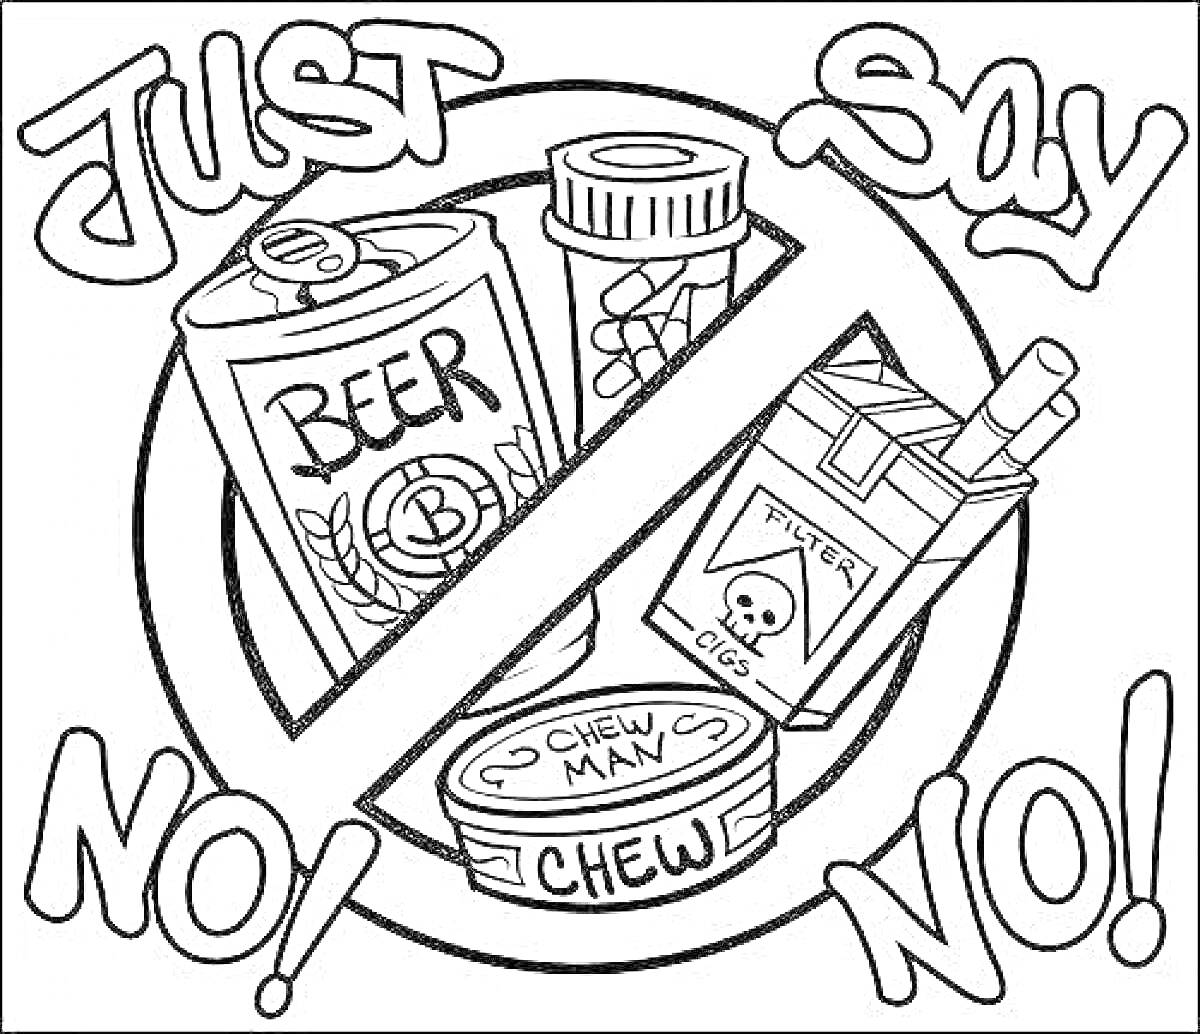 изображение с кружкой пива, таблетками, жевательным табаком в круге и сигаретами с надписью 